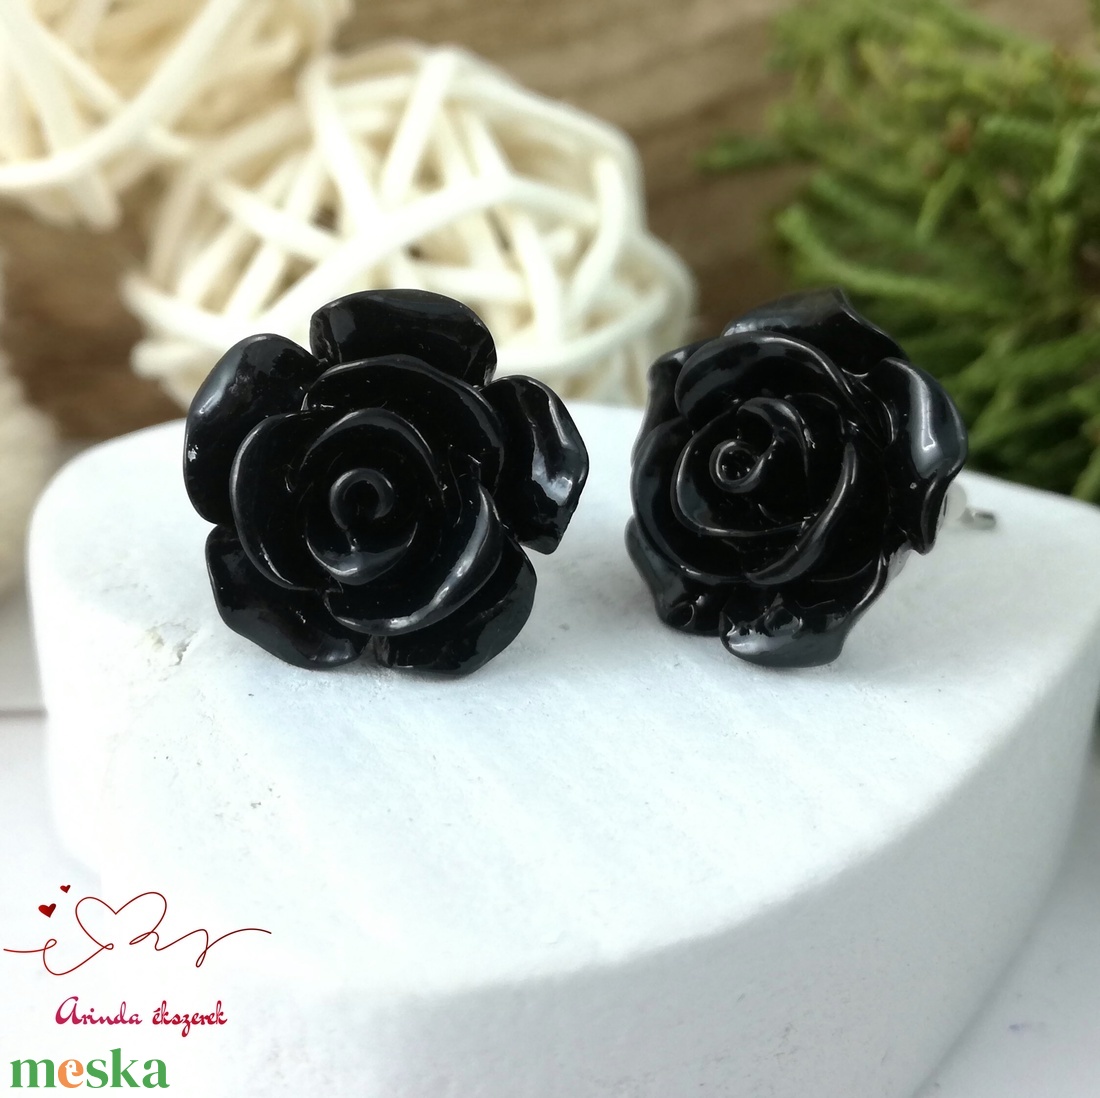 Fekete rózsás antiallergén nemesacél acél fülbevaló tavaszi nyári ajándék nőnek lánynak hétköznapra esküvőre - ékszer - fülbevaló - pötty fülbevaló - Meska.hu